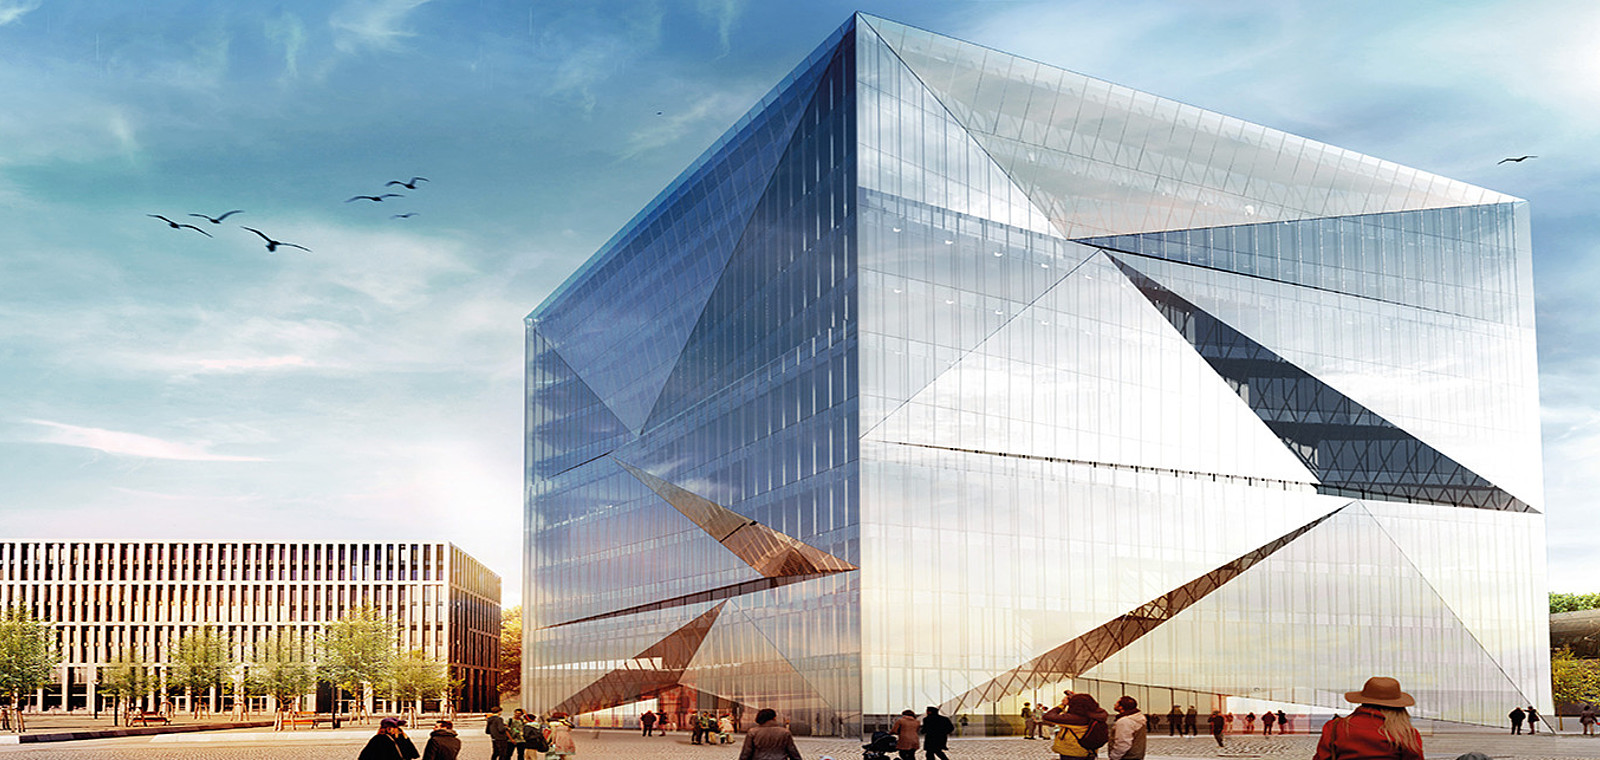 Das Bild zeigt den cube berlin, das intelligenteste Bürogebäude Europas